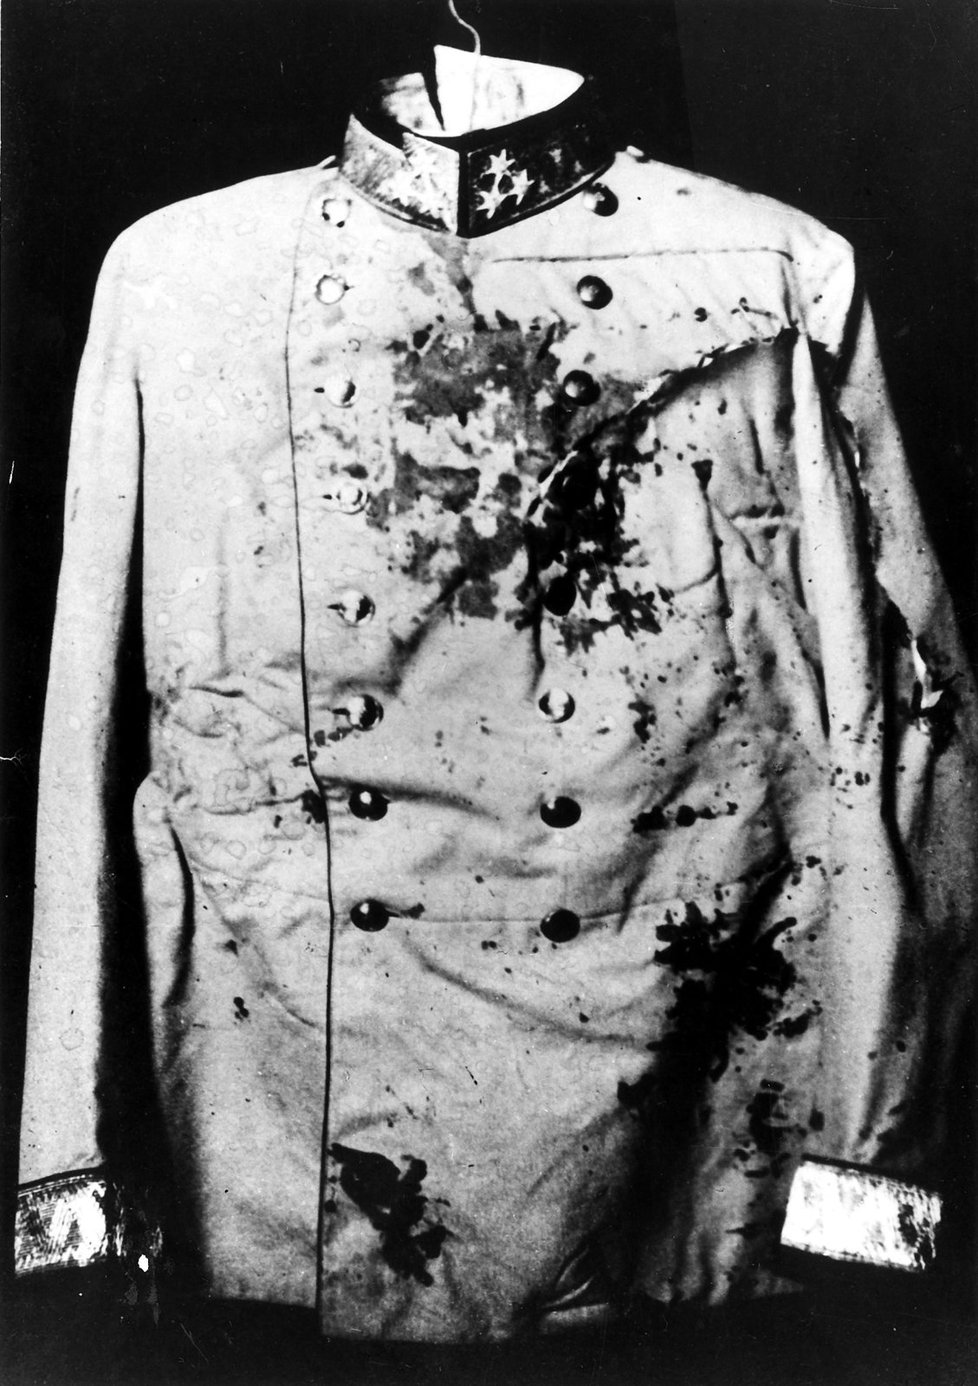 Kulka zasáhla Ferdinanda do krku, jeho zkrvavená uniforma je nyní vystavena v muzeu.